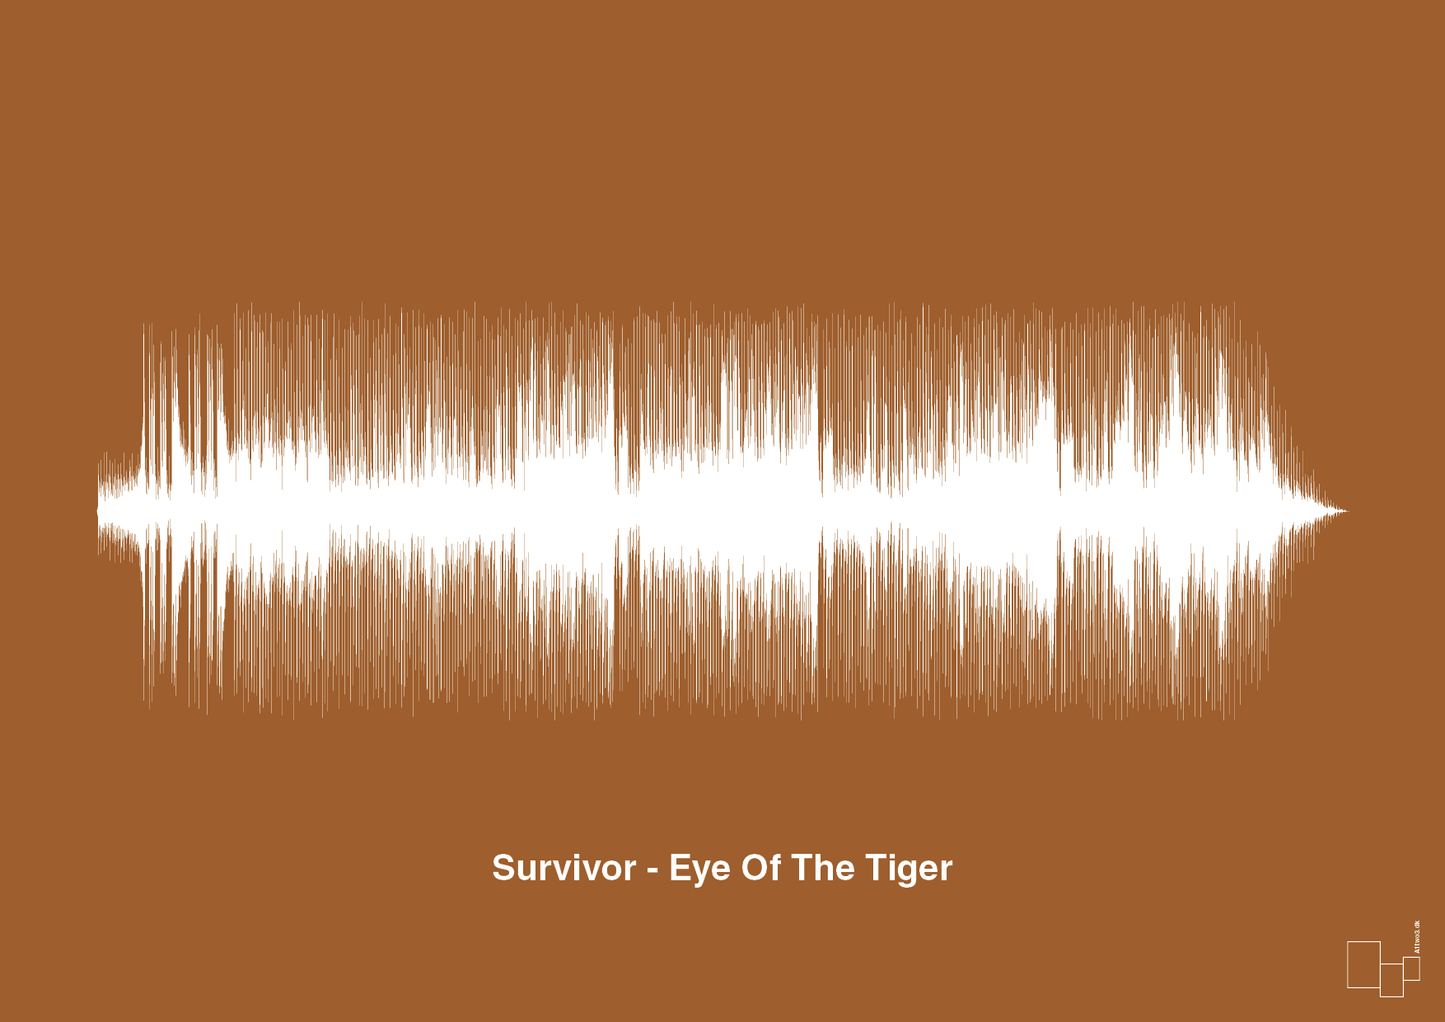 survivor - eye of the tiger - Plakat med Musik i Cognac